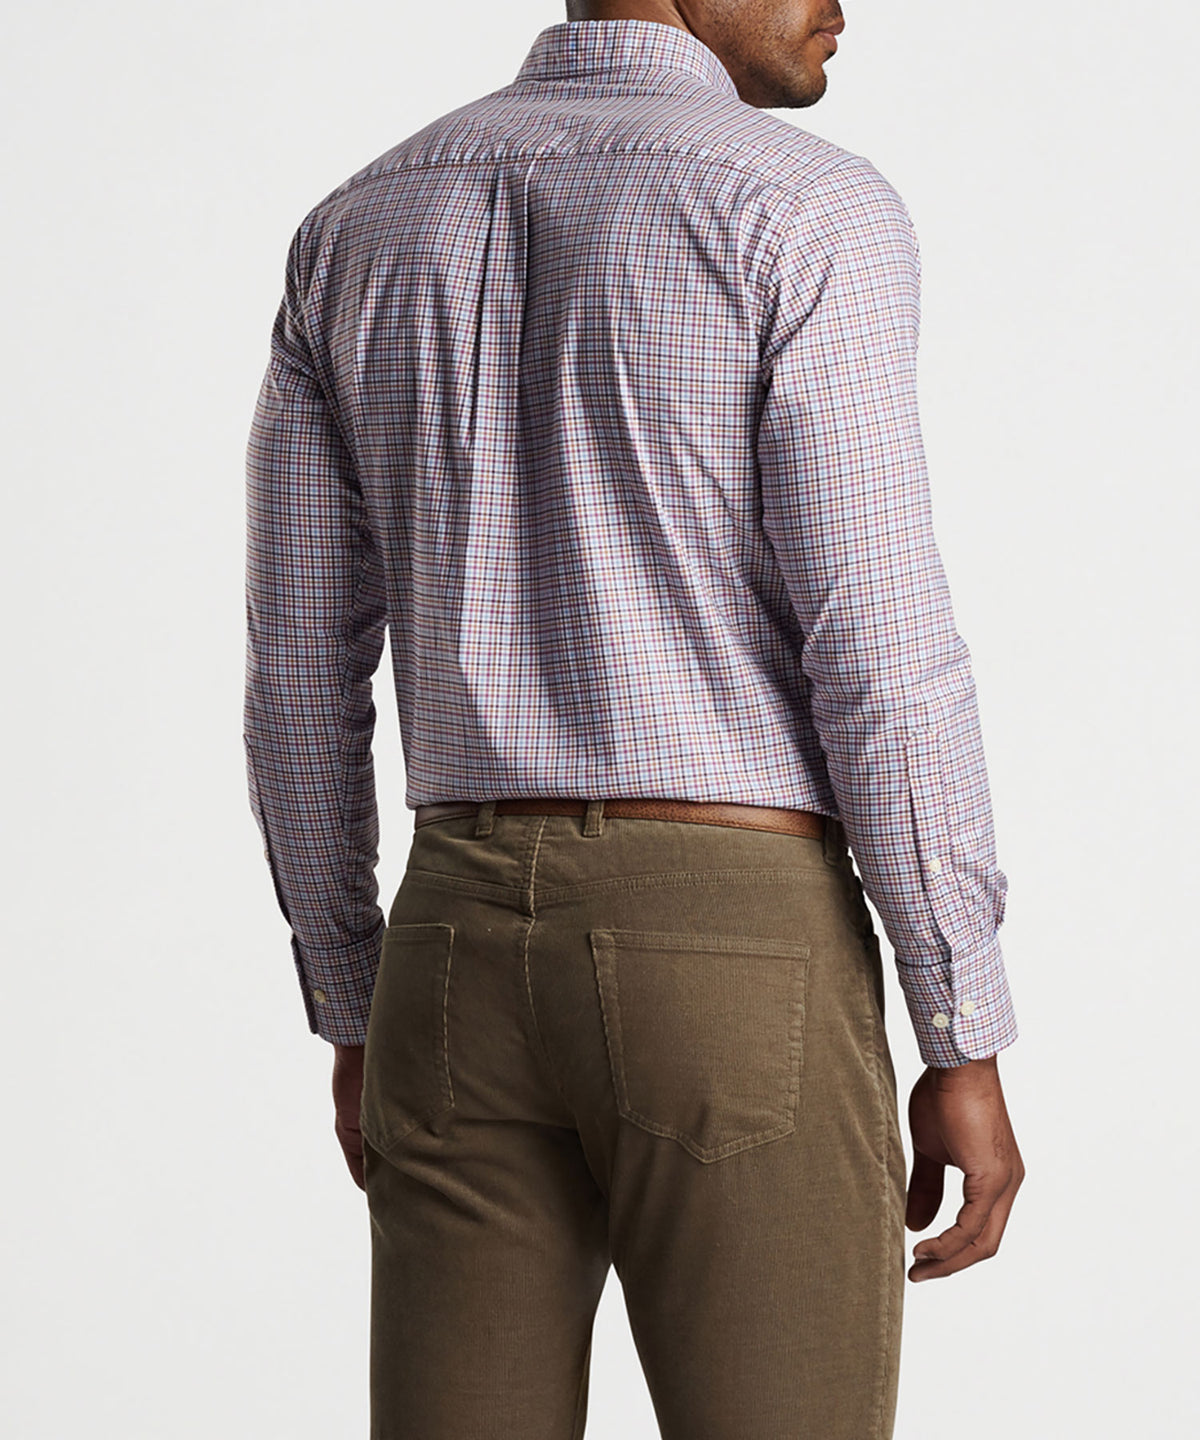 Peter Millar Long Sleeve Market Sport Shirt, Men's Big & Tall